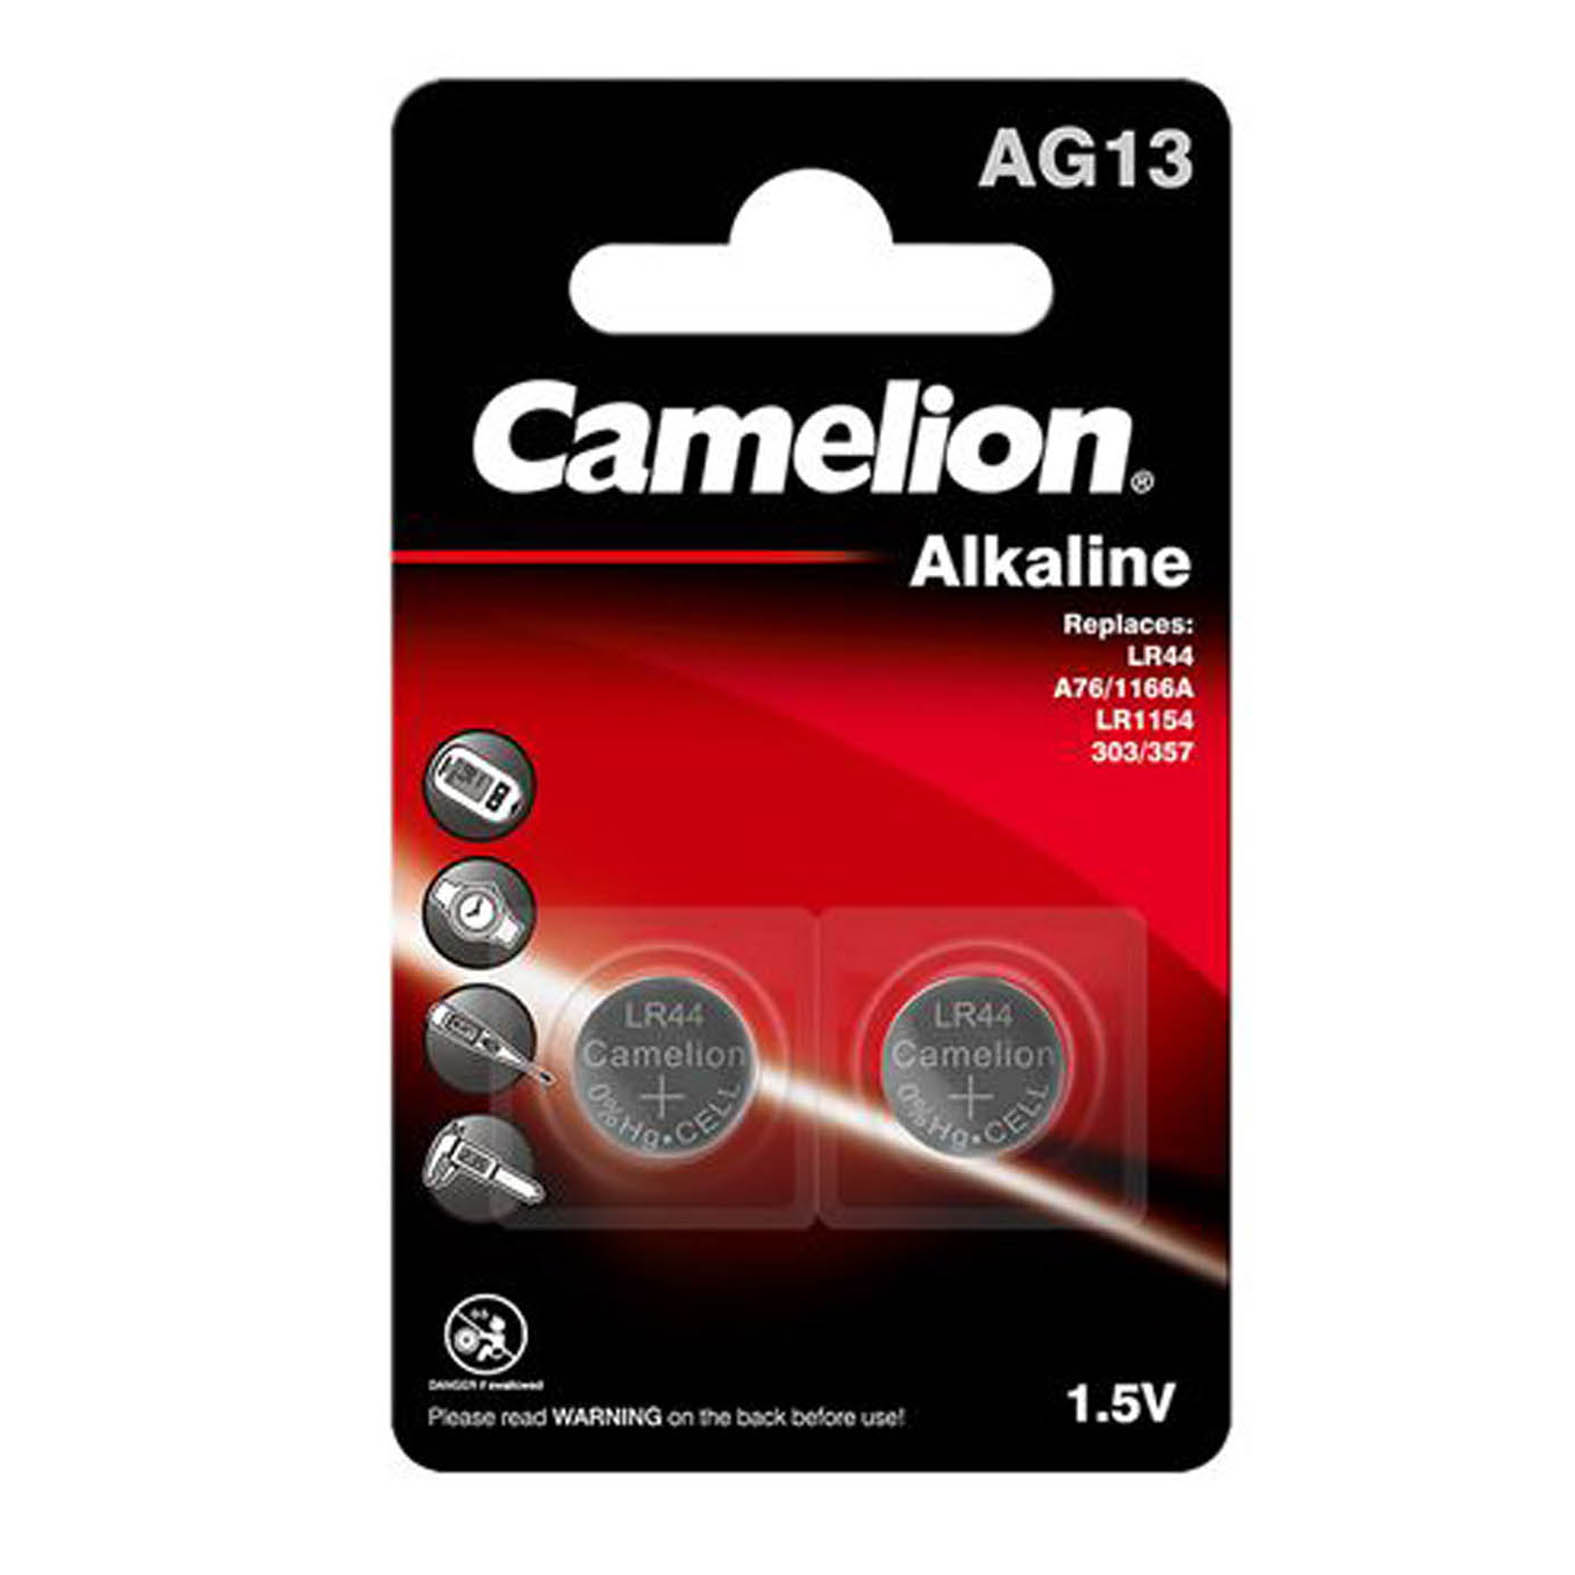  باتری سکه ای کملیون مدل AG13 ا Camelion AG13